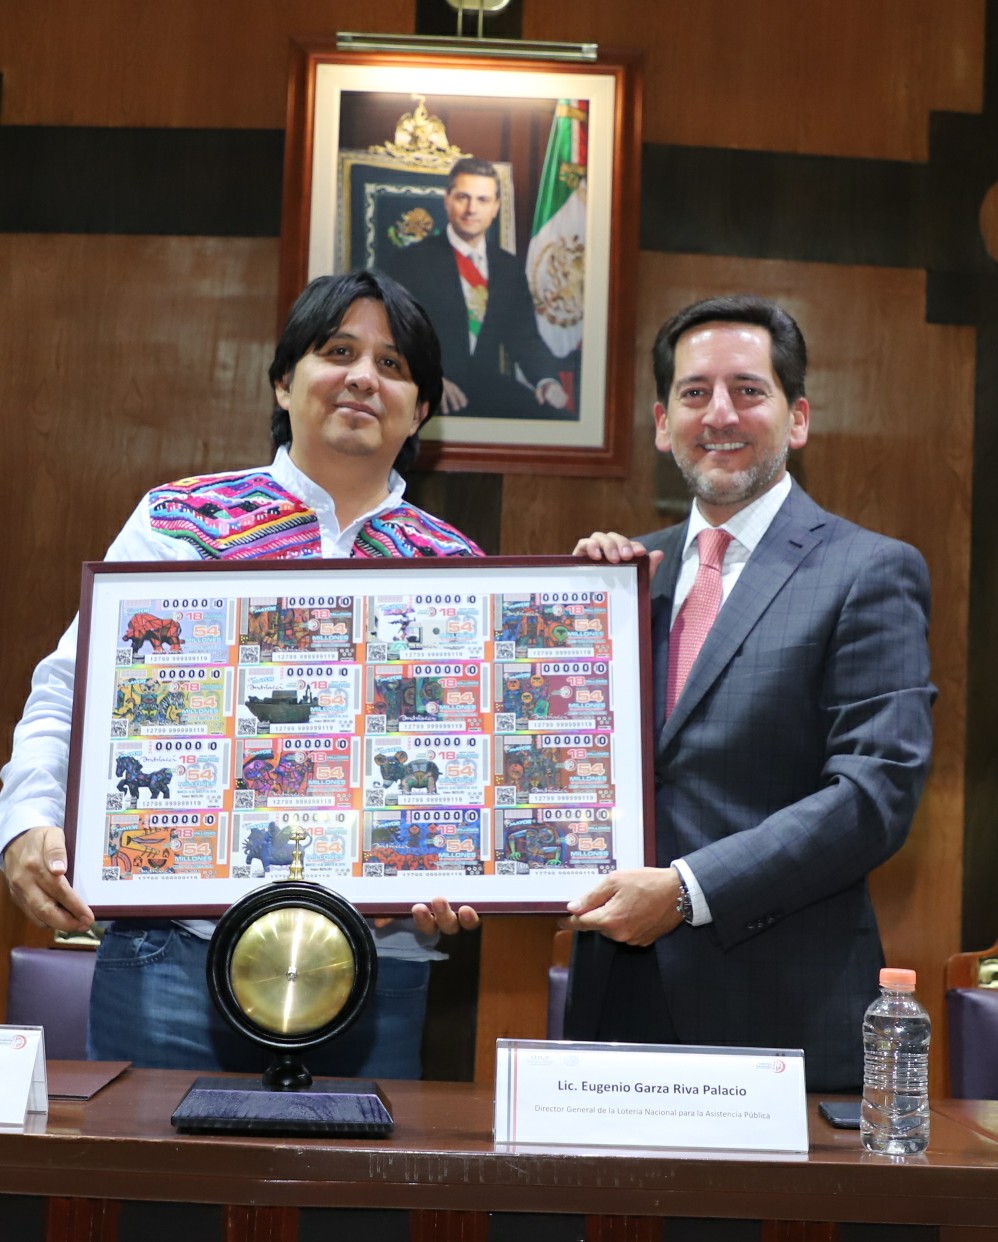 Fotografía donde posan con el billete del Sorteo Mayor, de izquierda a derecha: Fernando Andriacci y Eugenio Garza Riva Palacio.